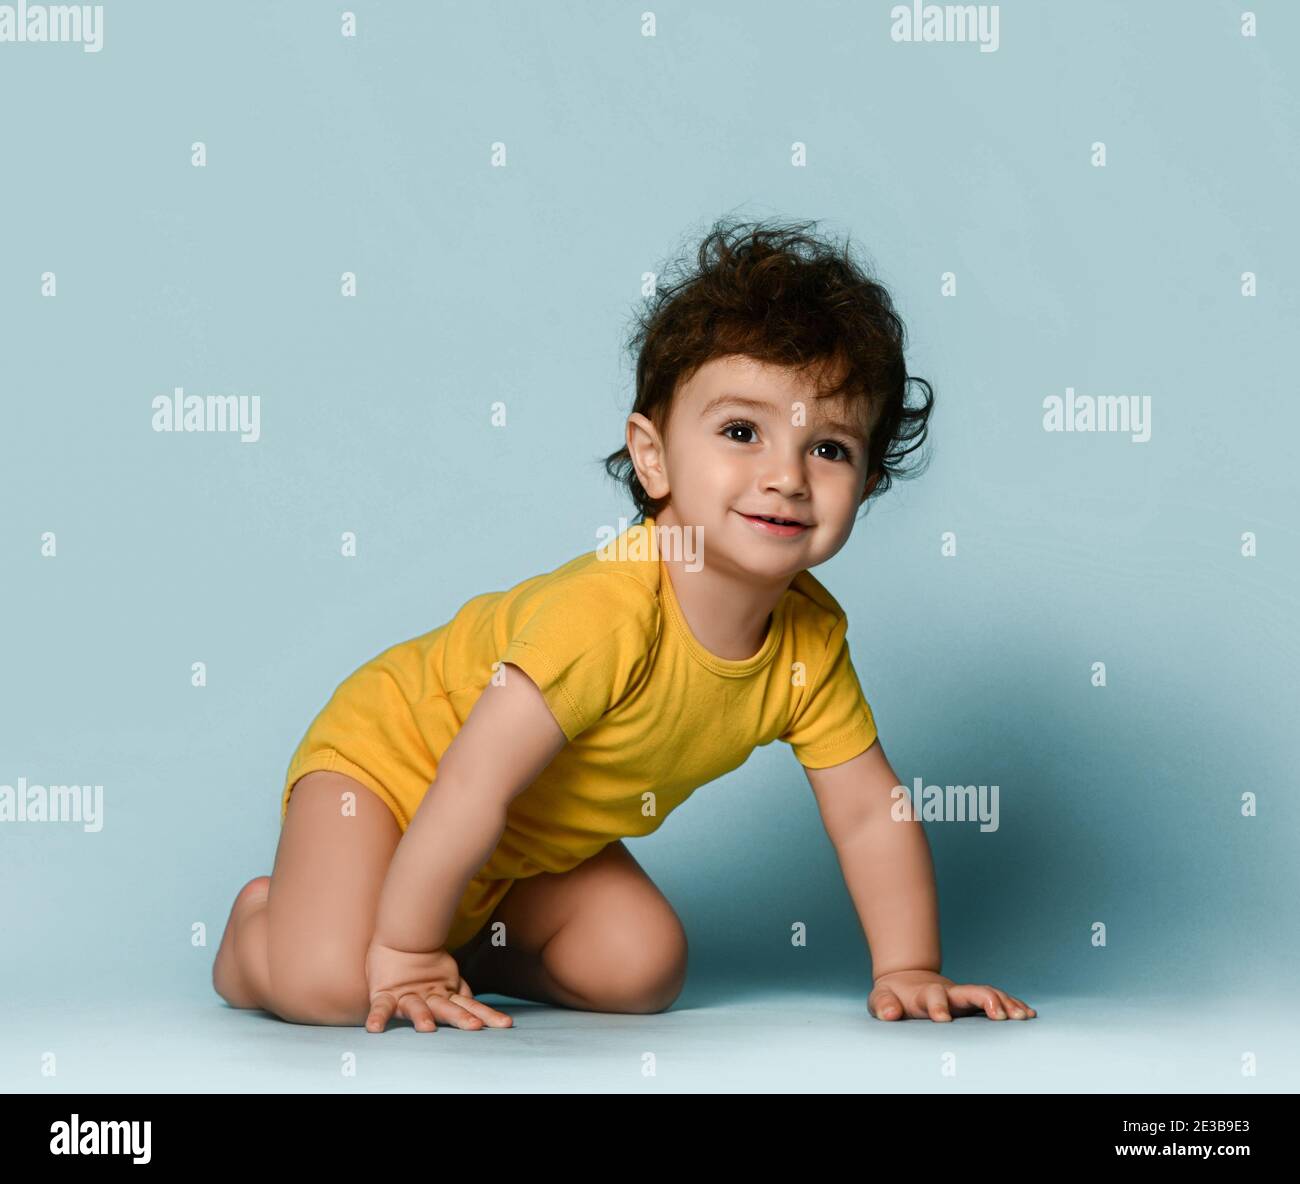 Kleine nette positive lockige Baby junge Kleinkind in gelb bequem Jumpsuit kriecht auf dem Boden und schaut auf die Kamera Stockfoto